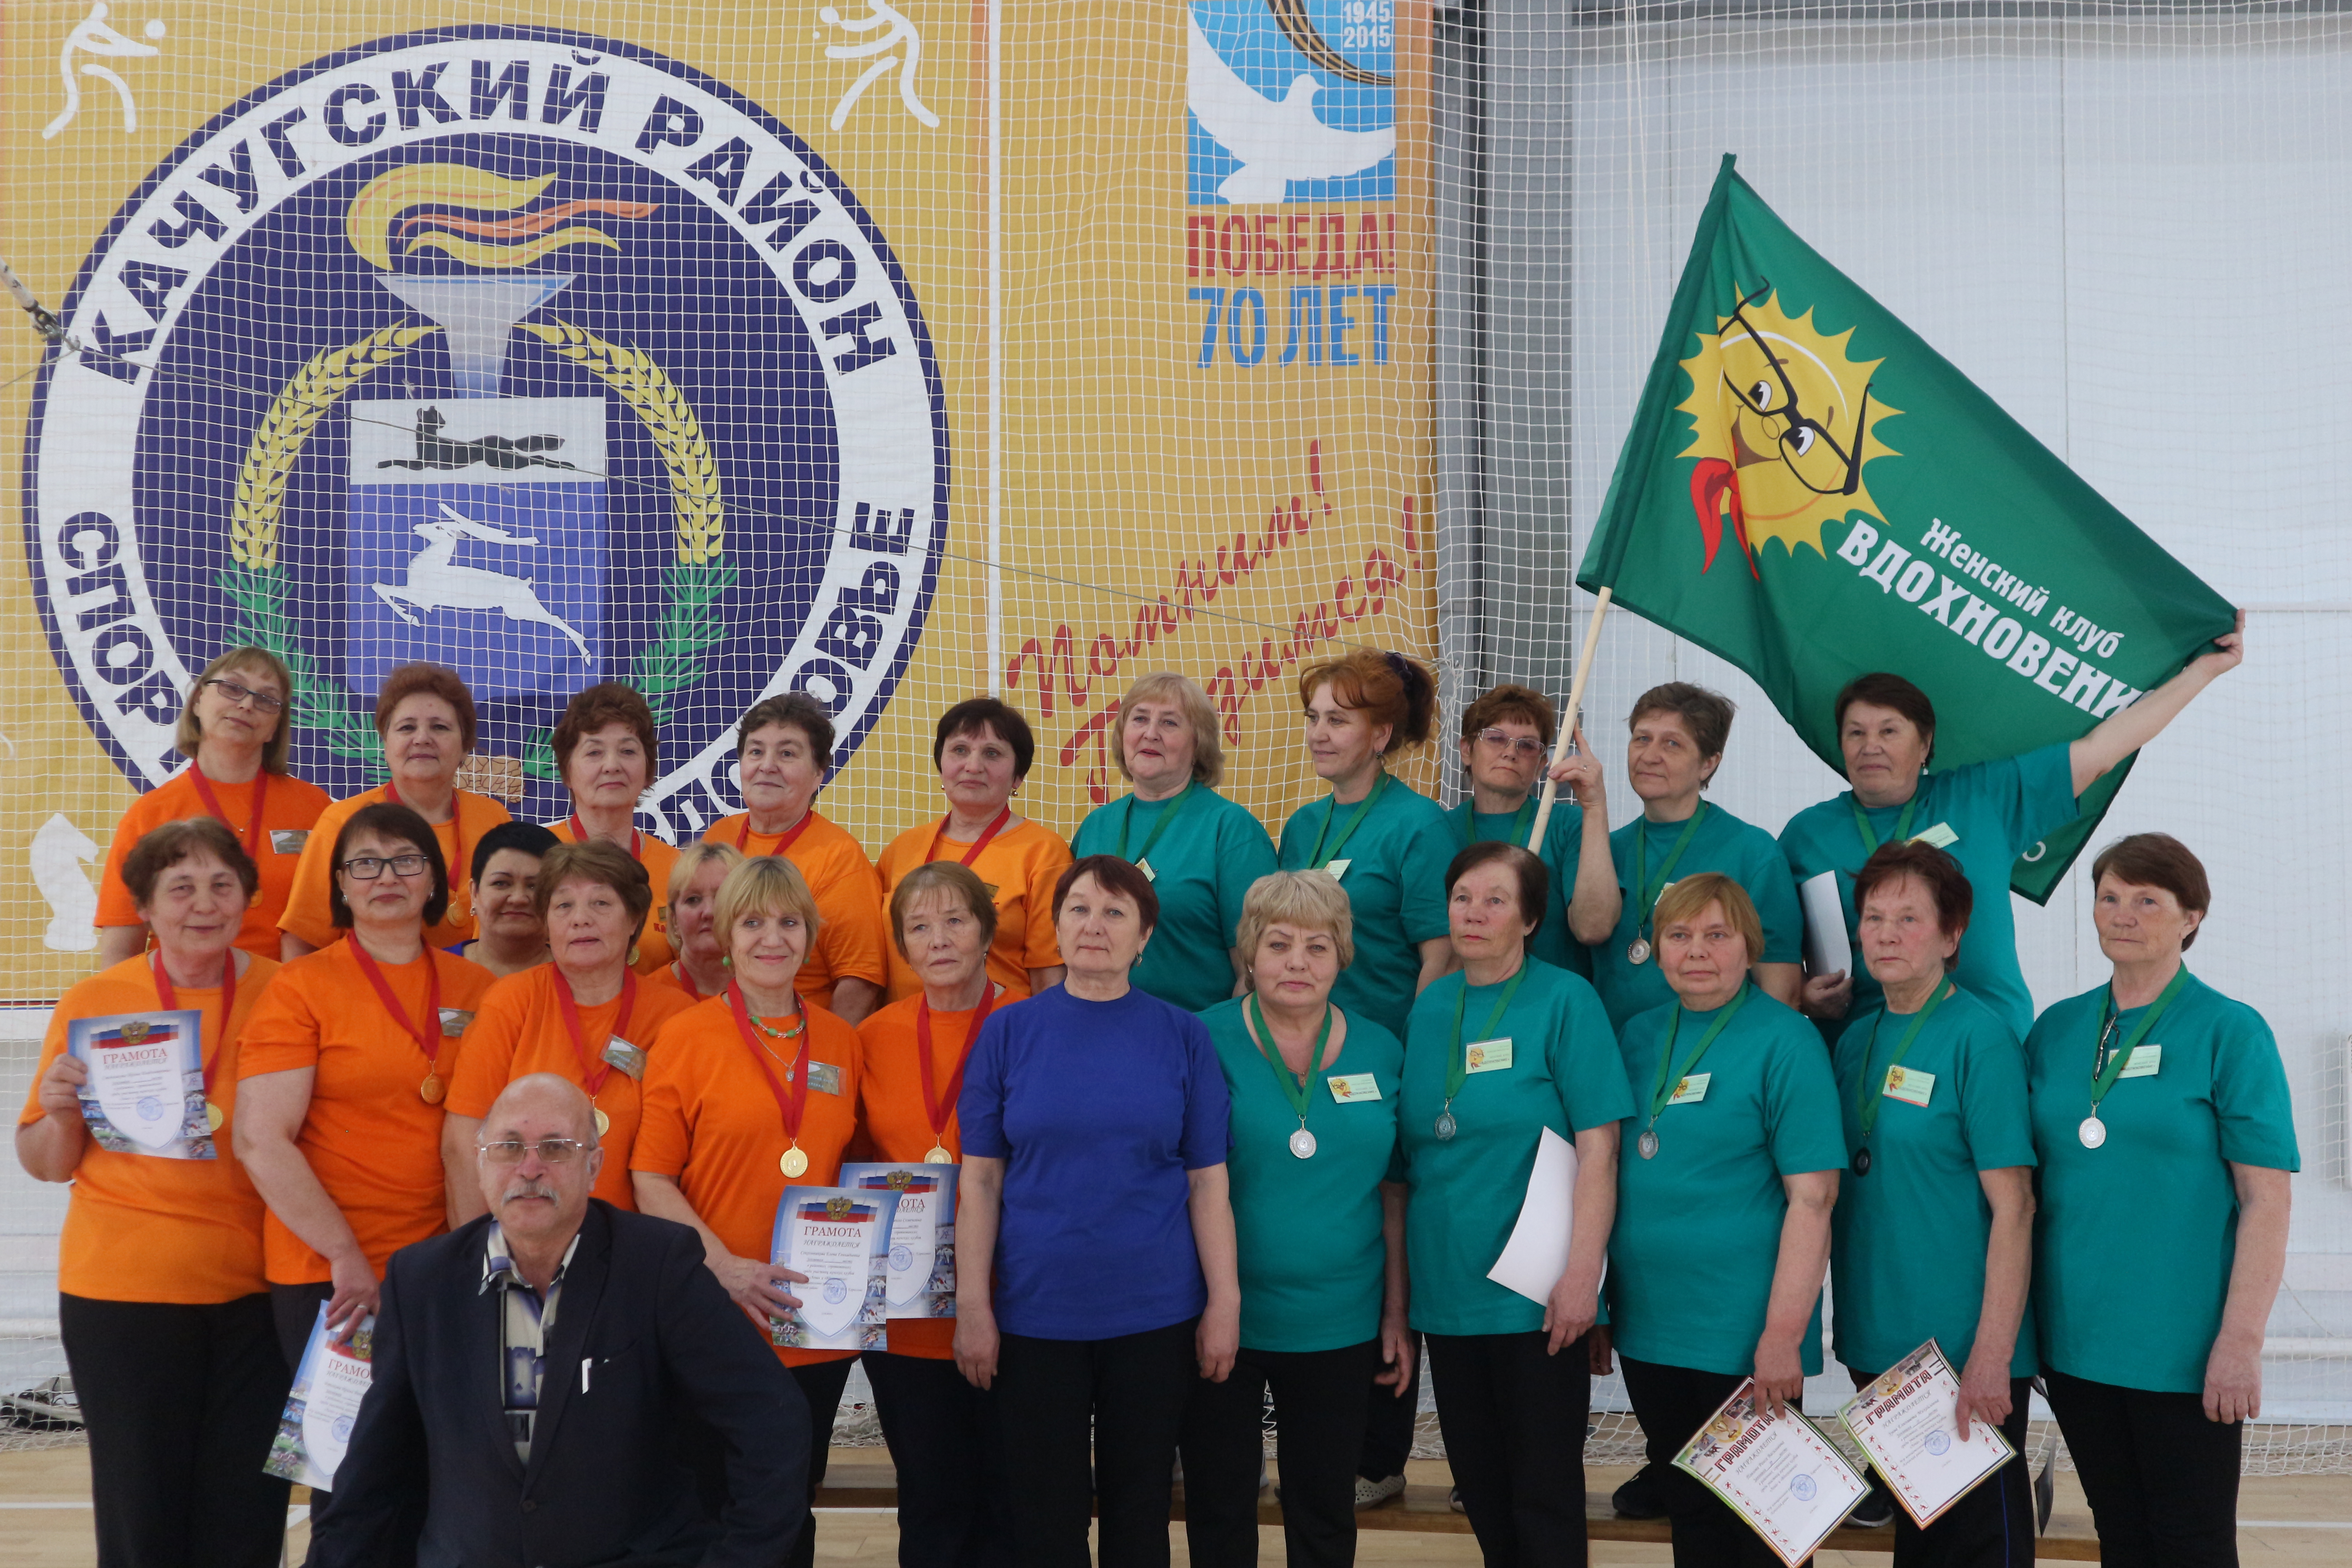 Районные соревнования среди участниц женских клубов «Лена» и «Вдохновение».